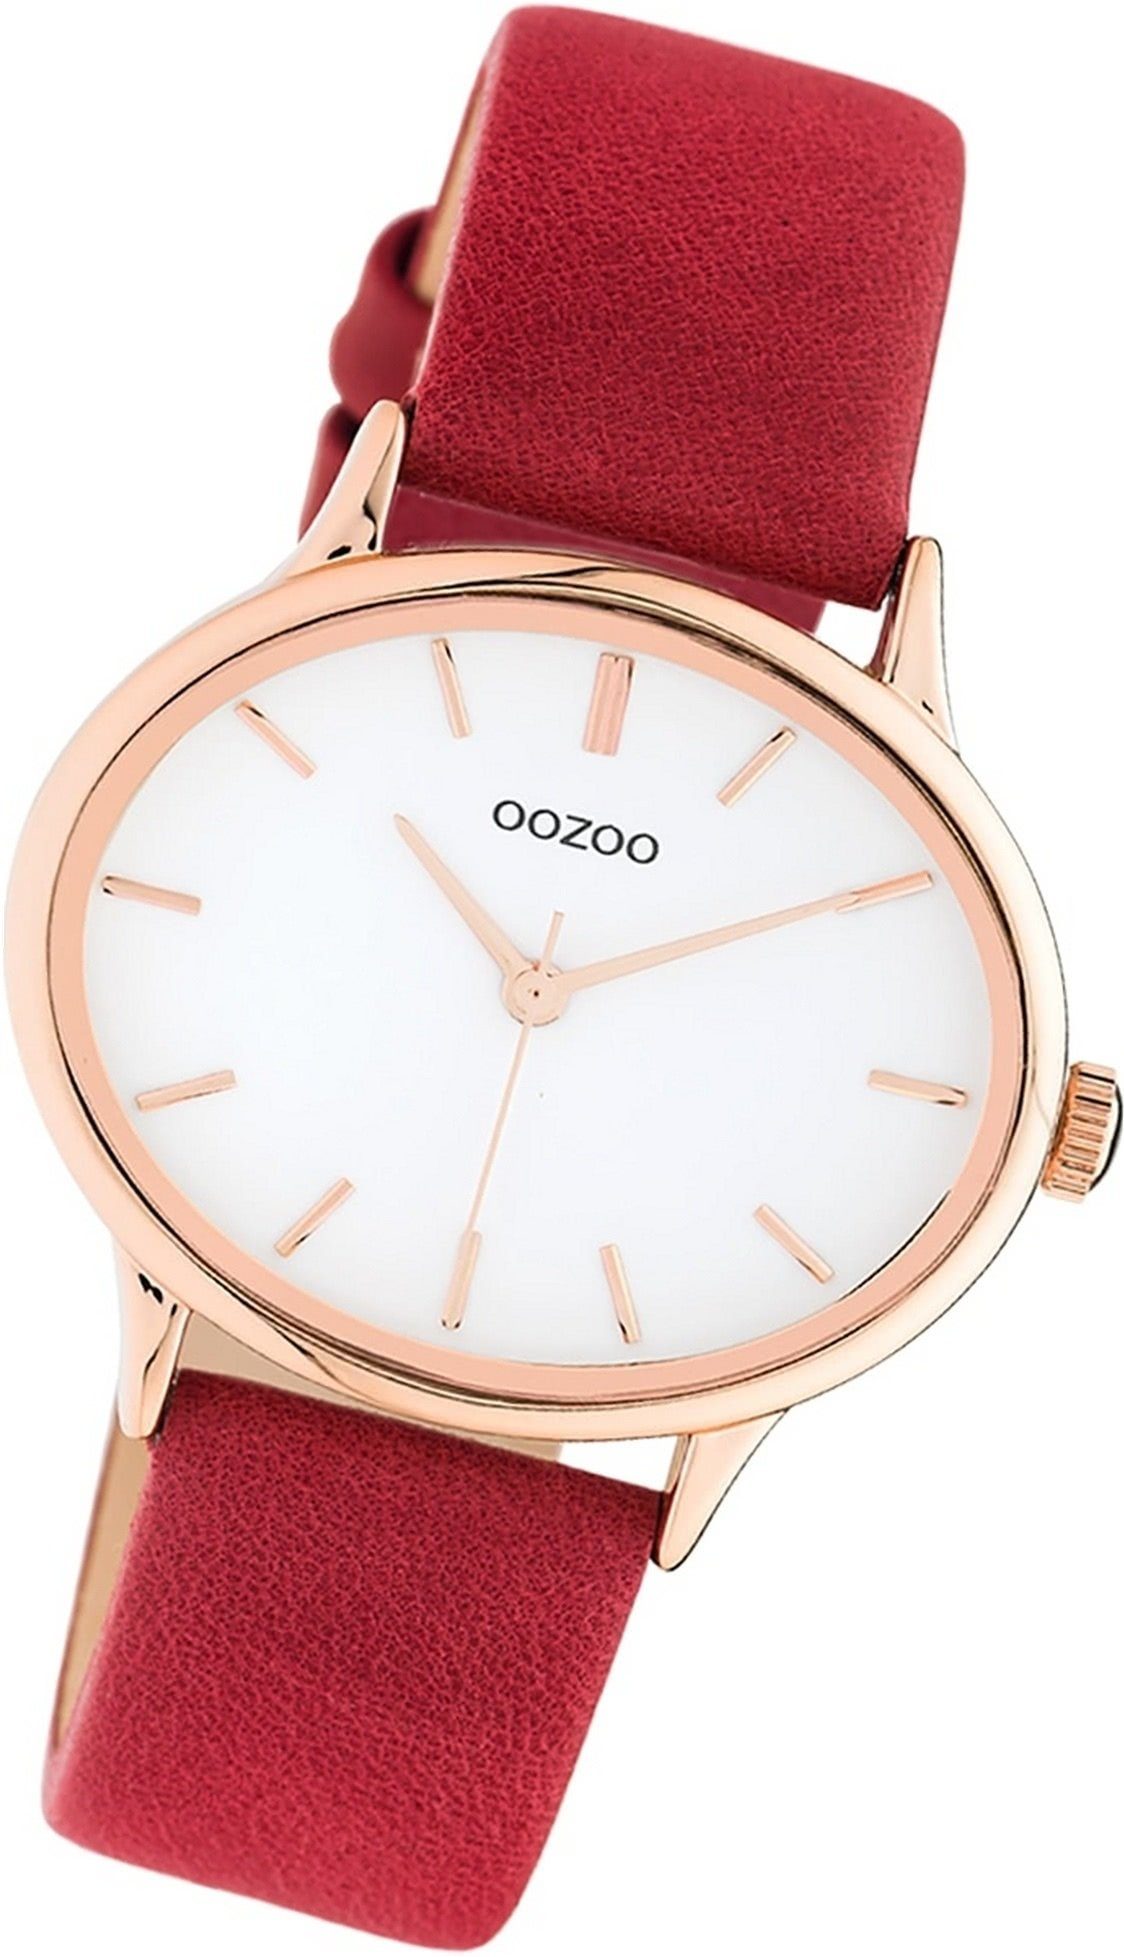 OOZOO Quarzuhr Oozoo Leder Damen Uhr C10942 Analog, Damenuhr Lederarmband rot, rundes Gehäuse, extra groß (ca. 38x31mm)